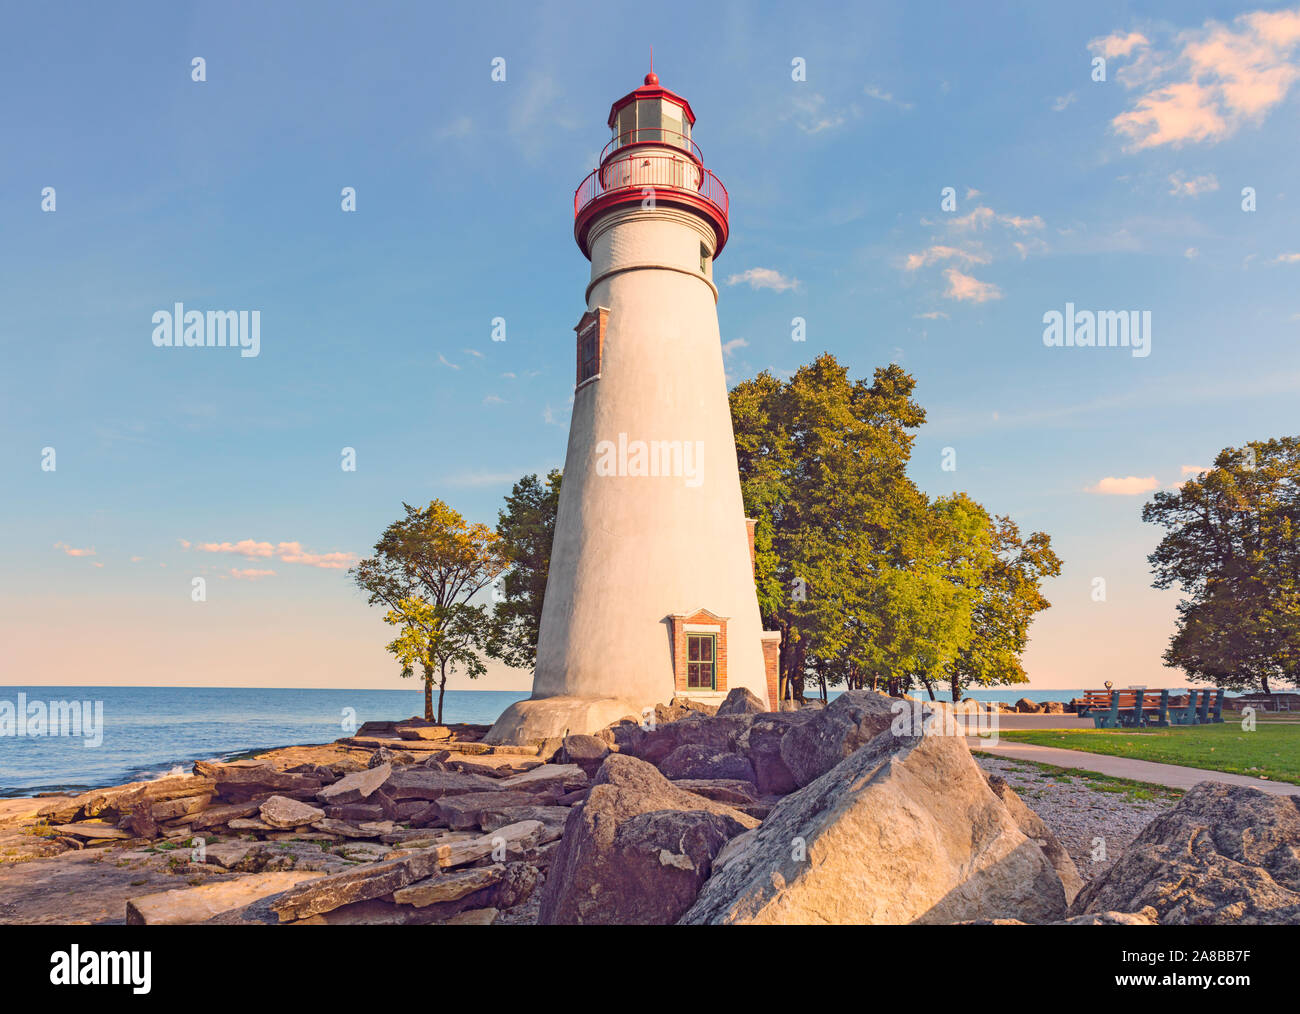 Dramatische Herbst scenic Marblehead Halbinsel und Leuchtturm auf felsigen Ufer des Lake Erie, amerikanischen Großen Seen Marblehead Lighthouse State Park, Ohio Stockfoto